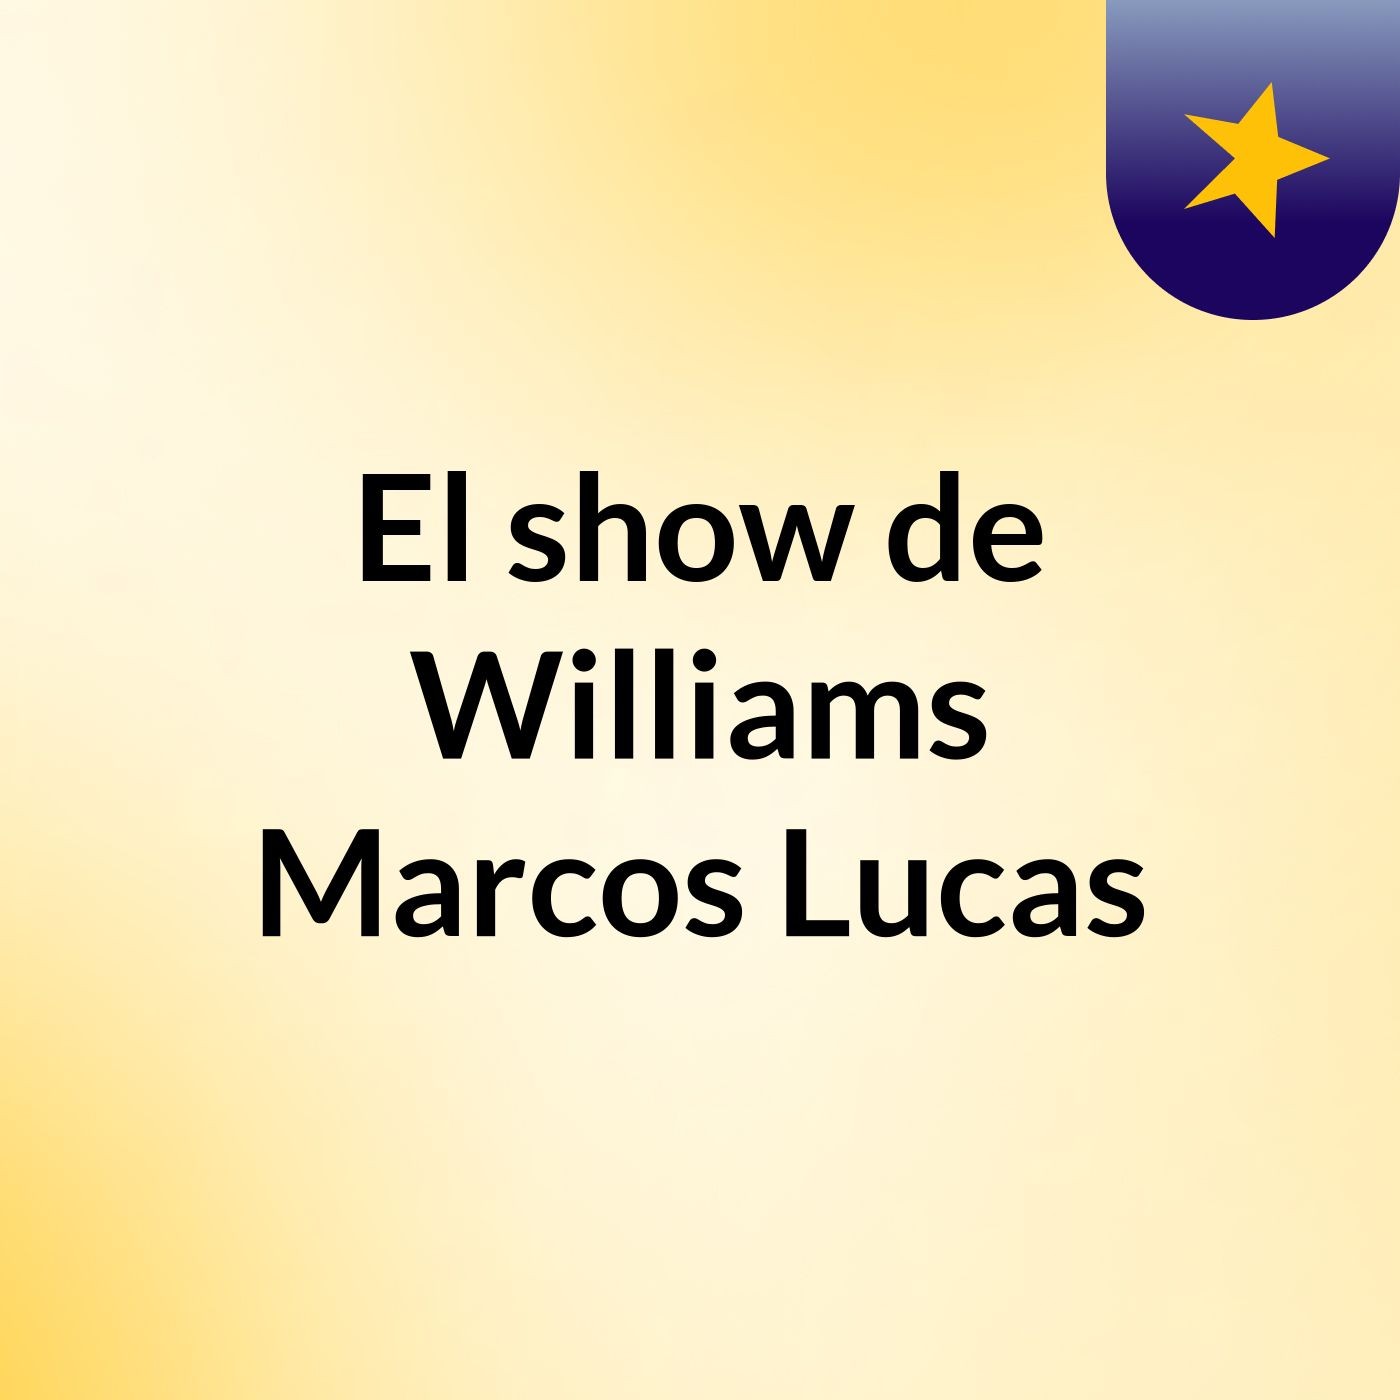 El show de Williams Marcos Lucas